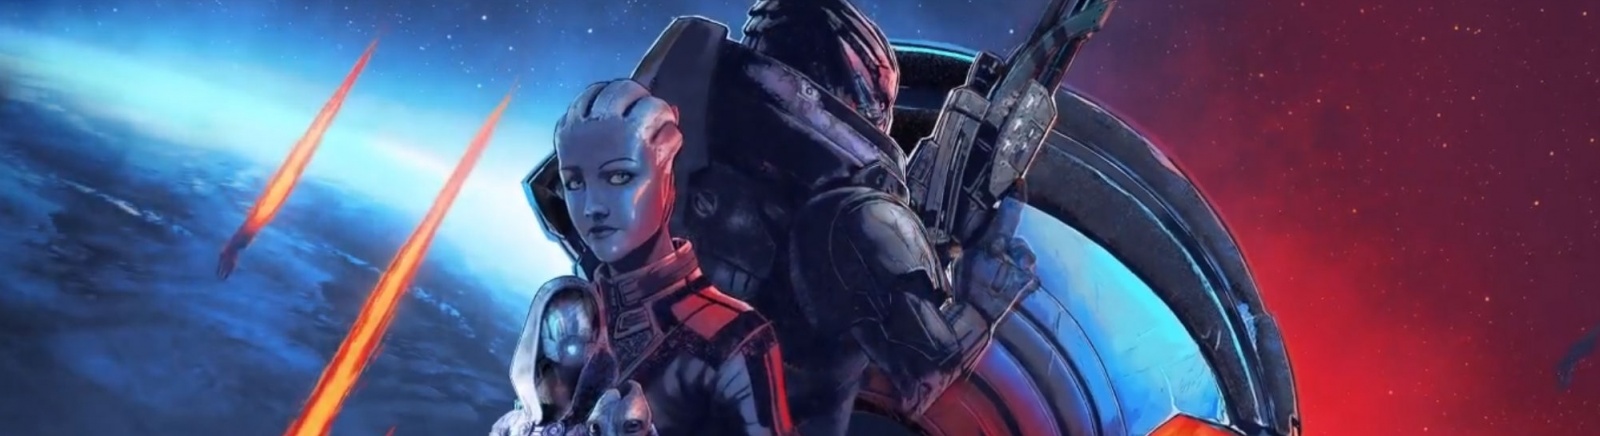 Дата выхода Mass Effect Legendary Edition  на PC, PS4 и Xbox One в России и во всем мире